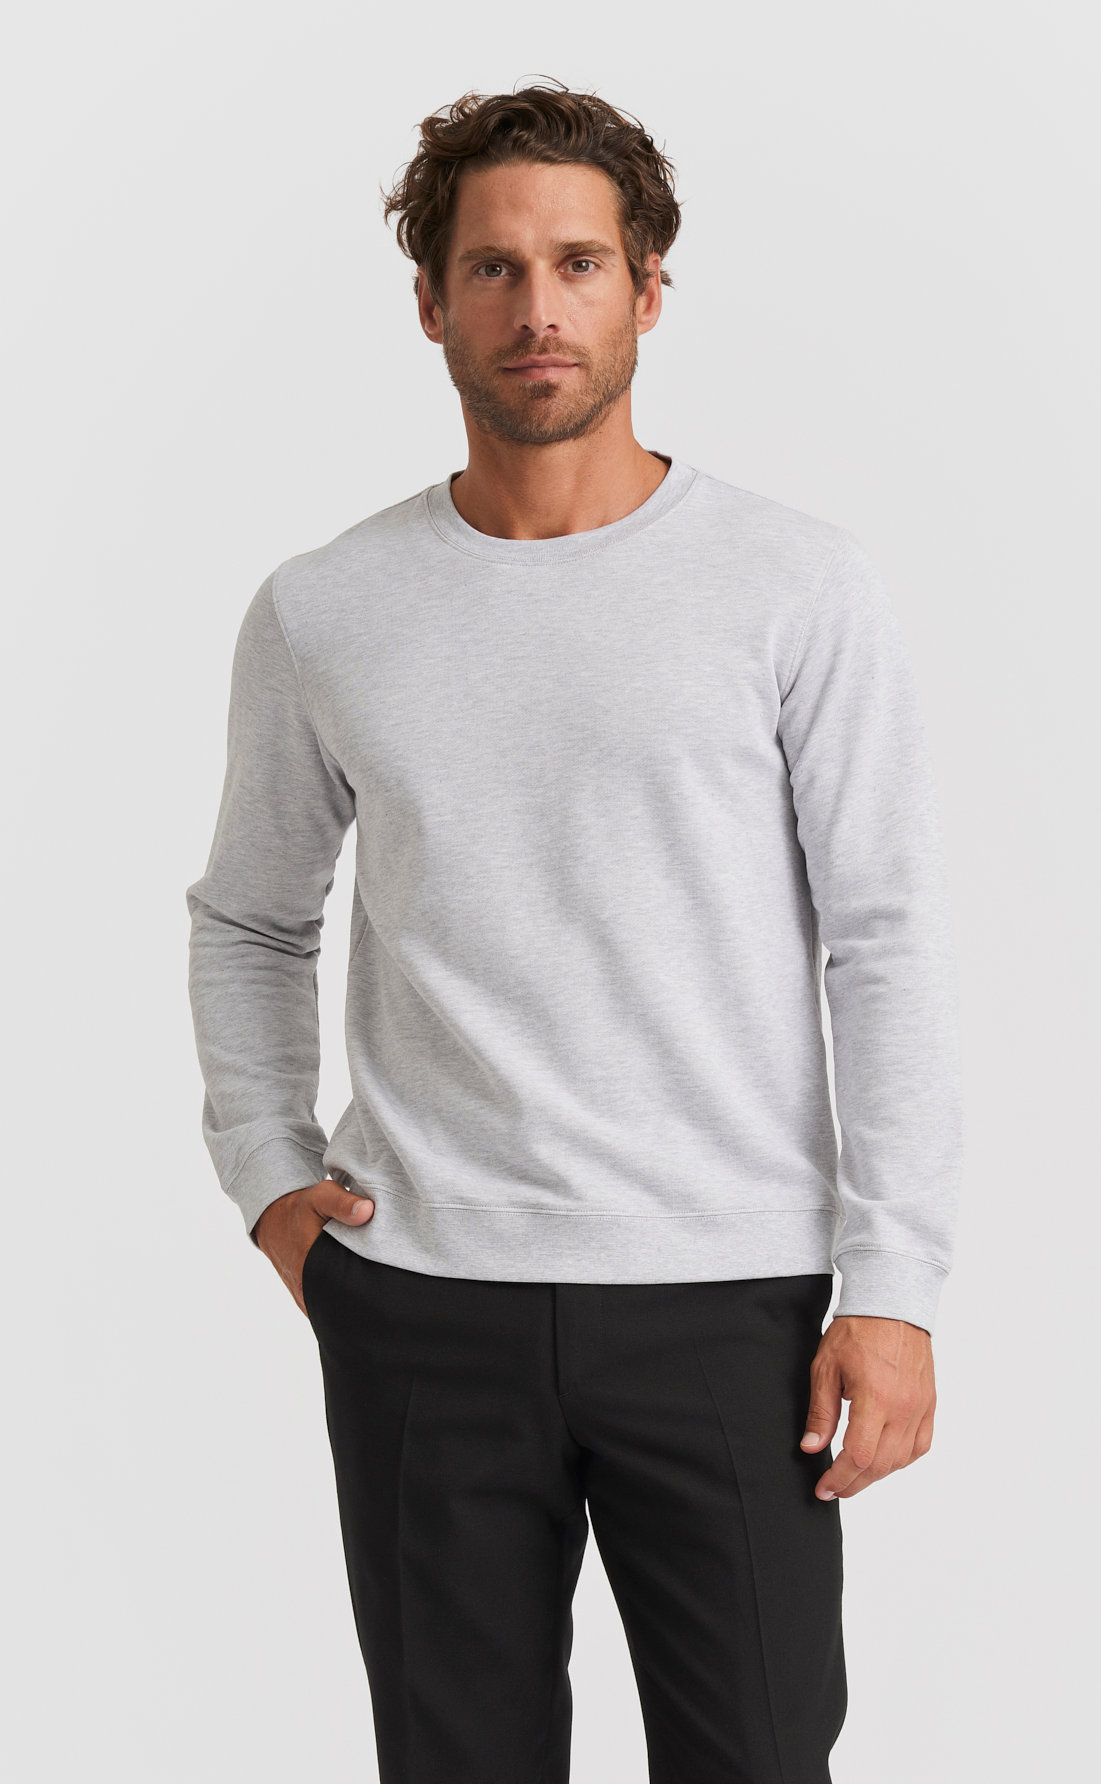 Men's Heritage Sweatshirts & Sweatpants